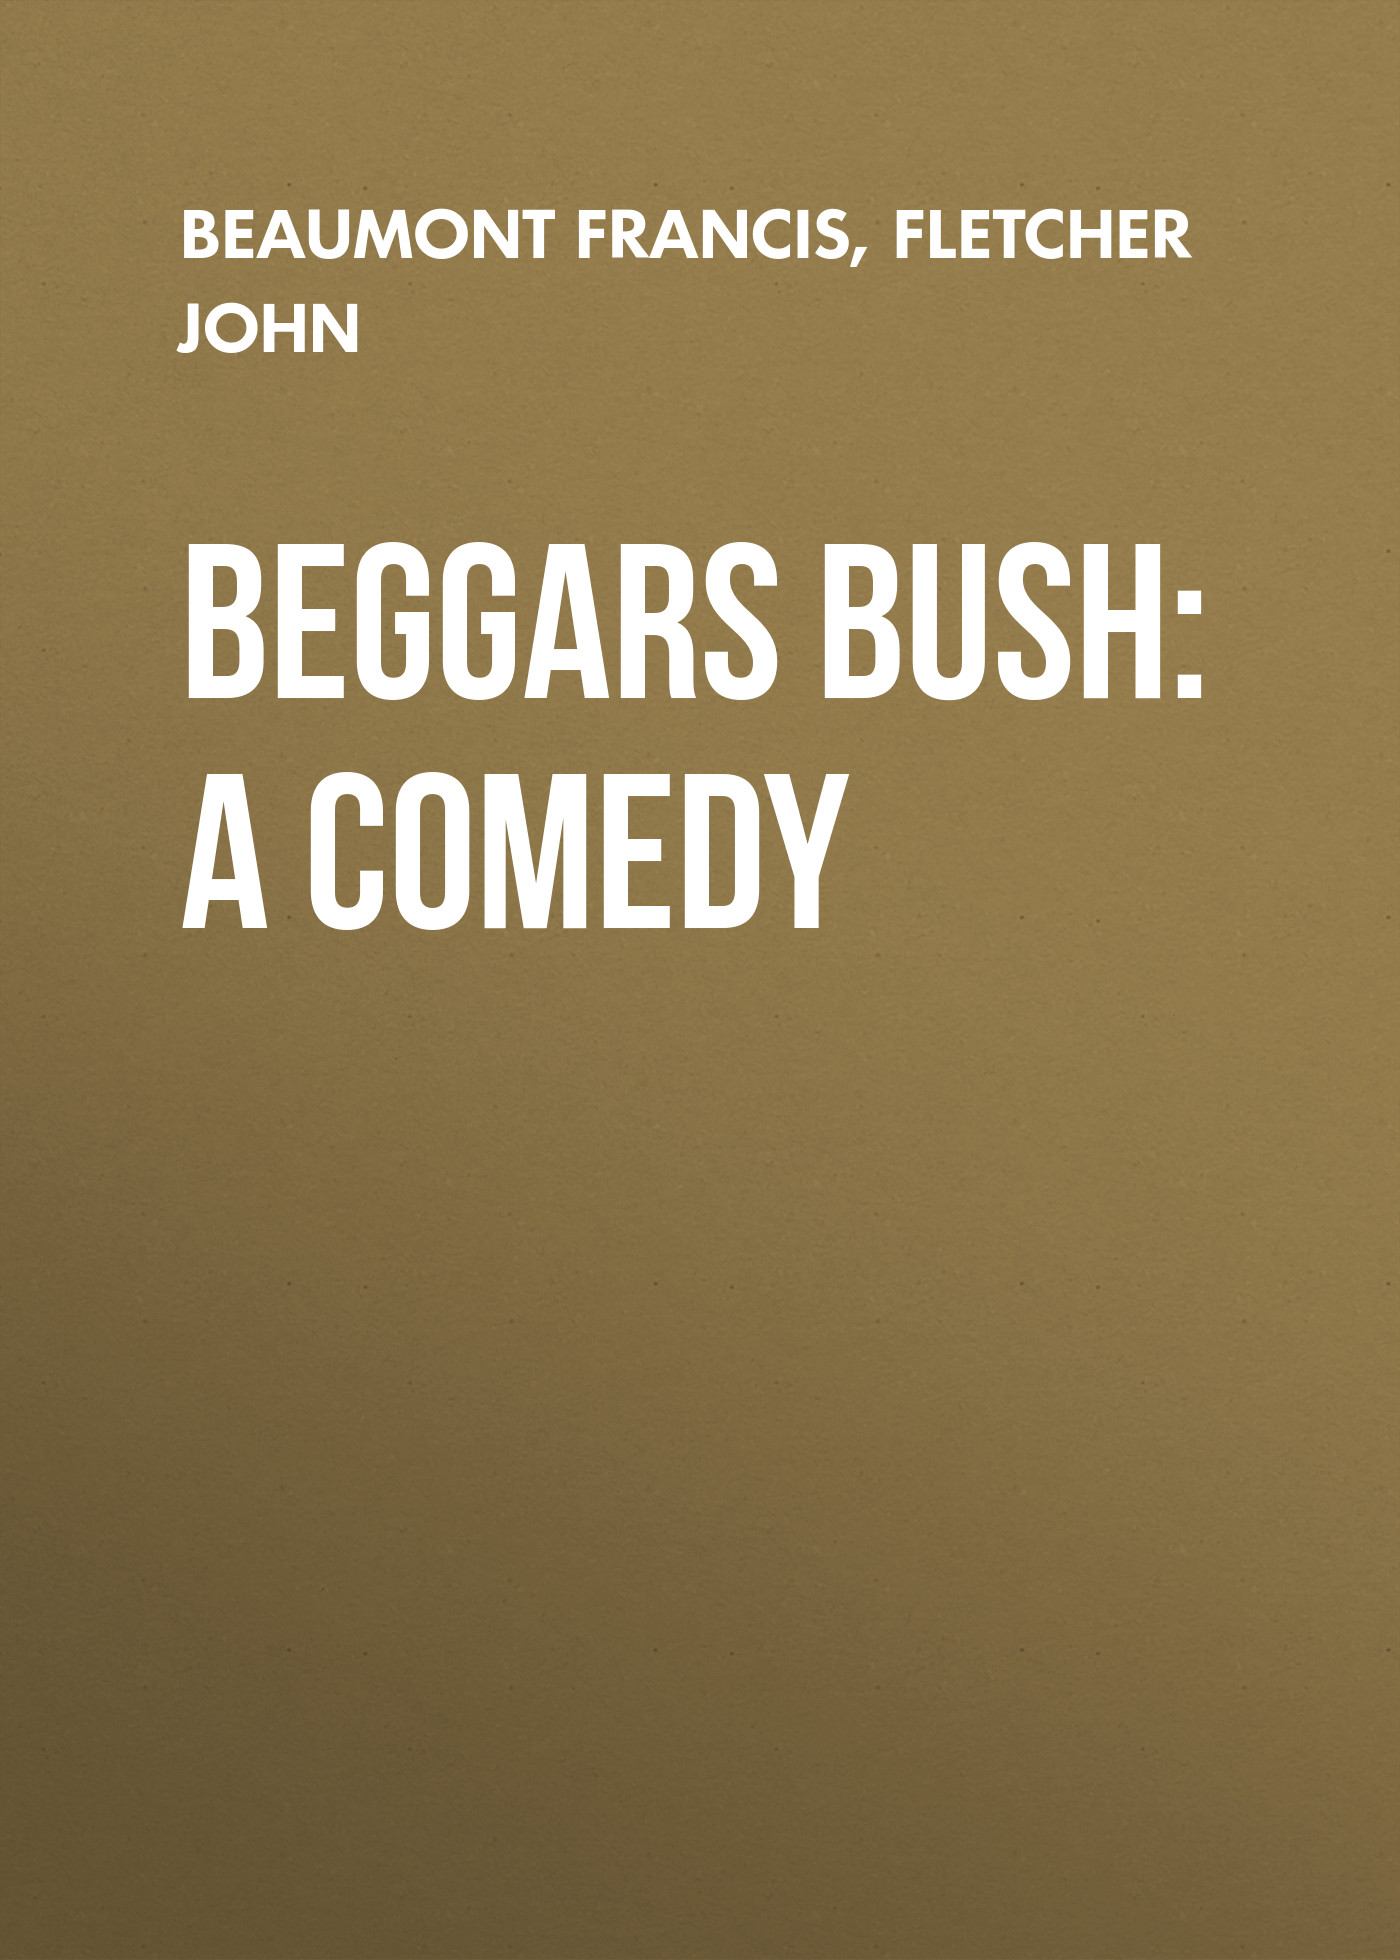 Книга Beggars Bush: A Comedy из серии , созданная John Fletcher, Francis Beaumont, может относится к жанру Зарубежная драматургия, Драматургия, Зарубежная старинная литература, Зарубежная классика. Стоимость электронной книги Beggars Bush: A Comedy с идентификатором 36367254 составляет 0 руб.